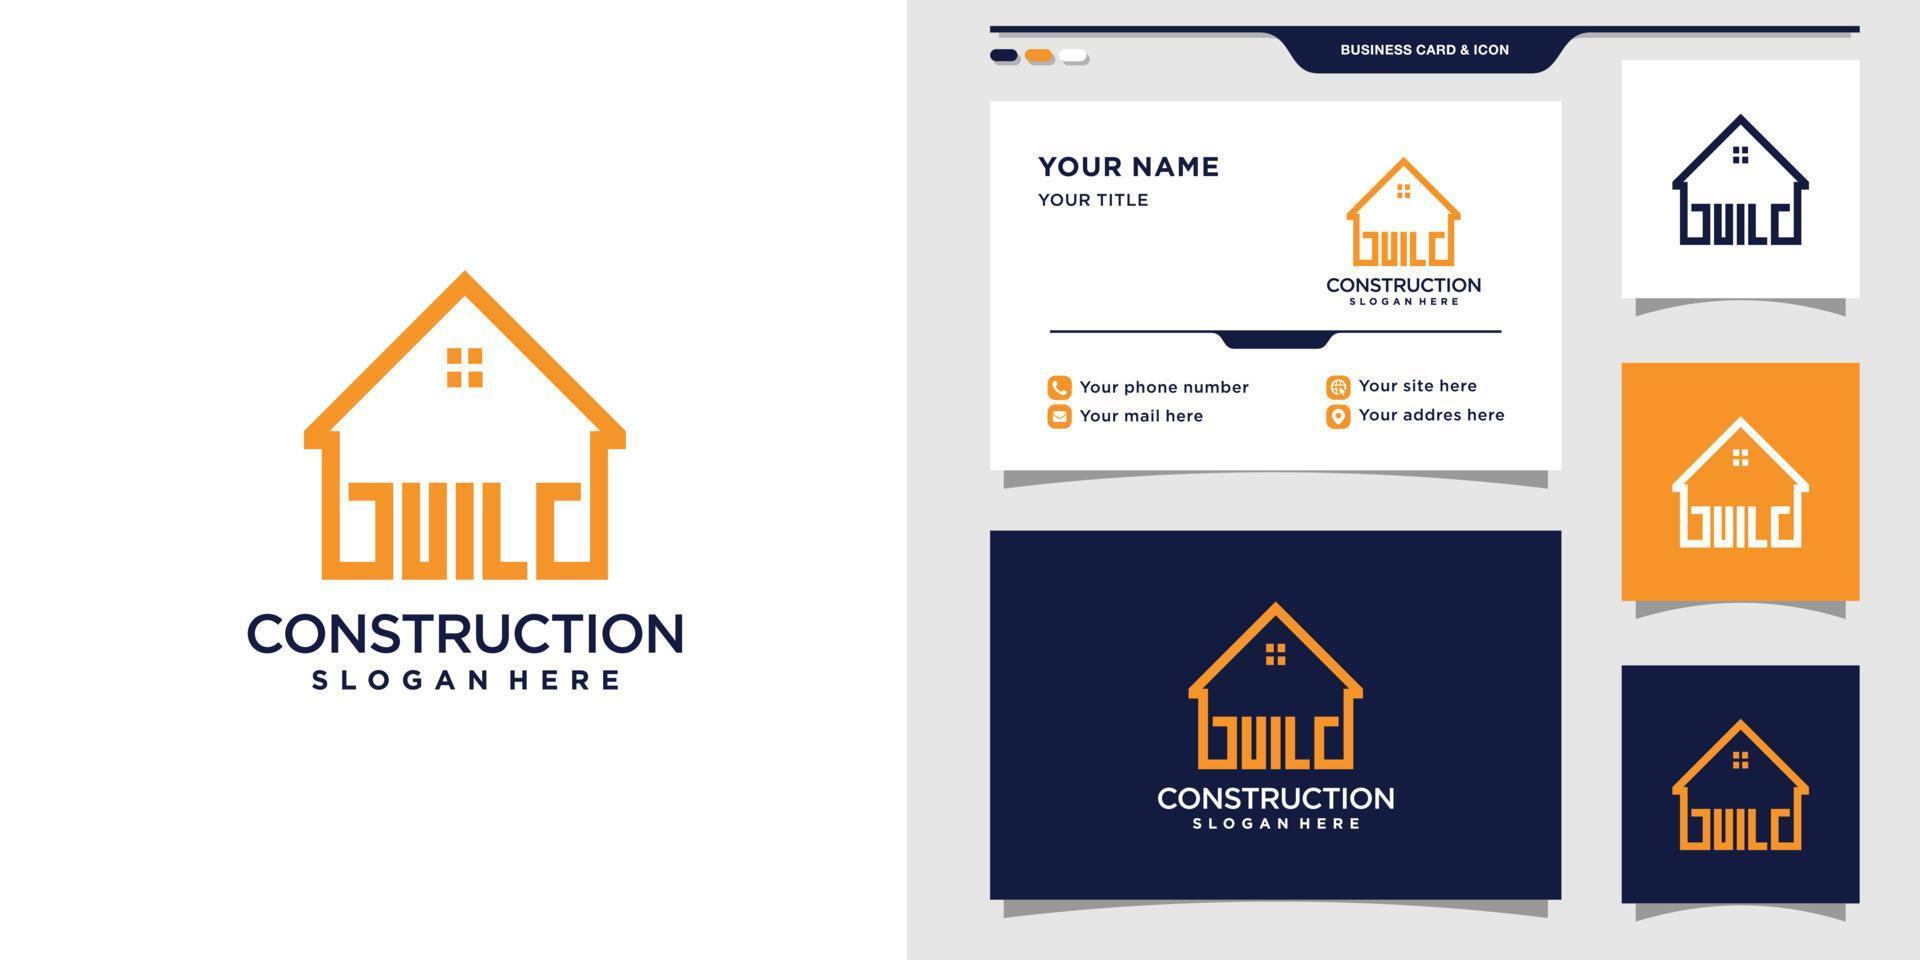 plantilla de logotipo de construcción con concepto creativo y diseño de tarjeta de visita vector premium